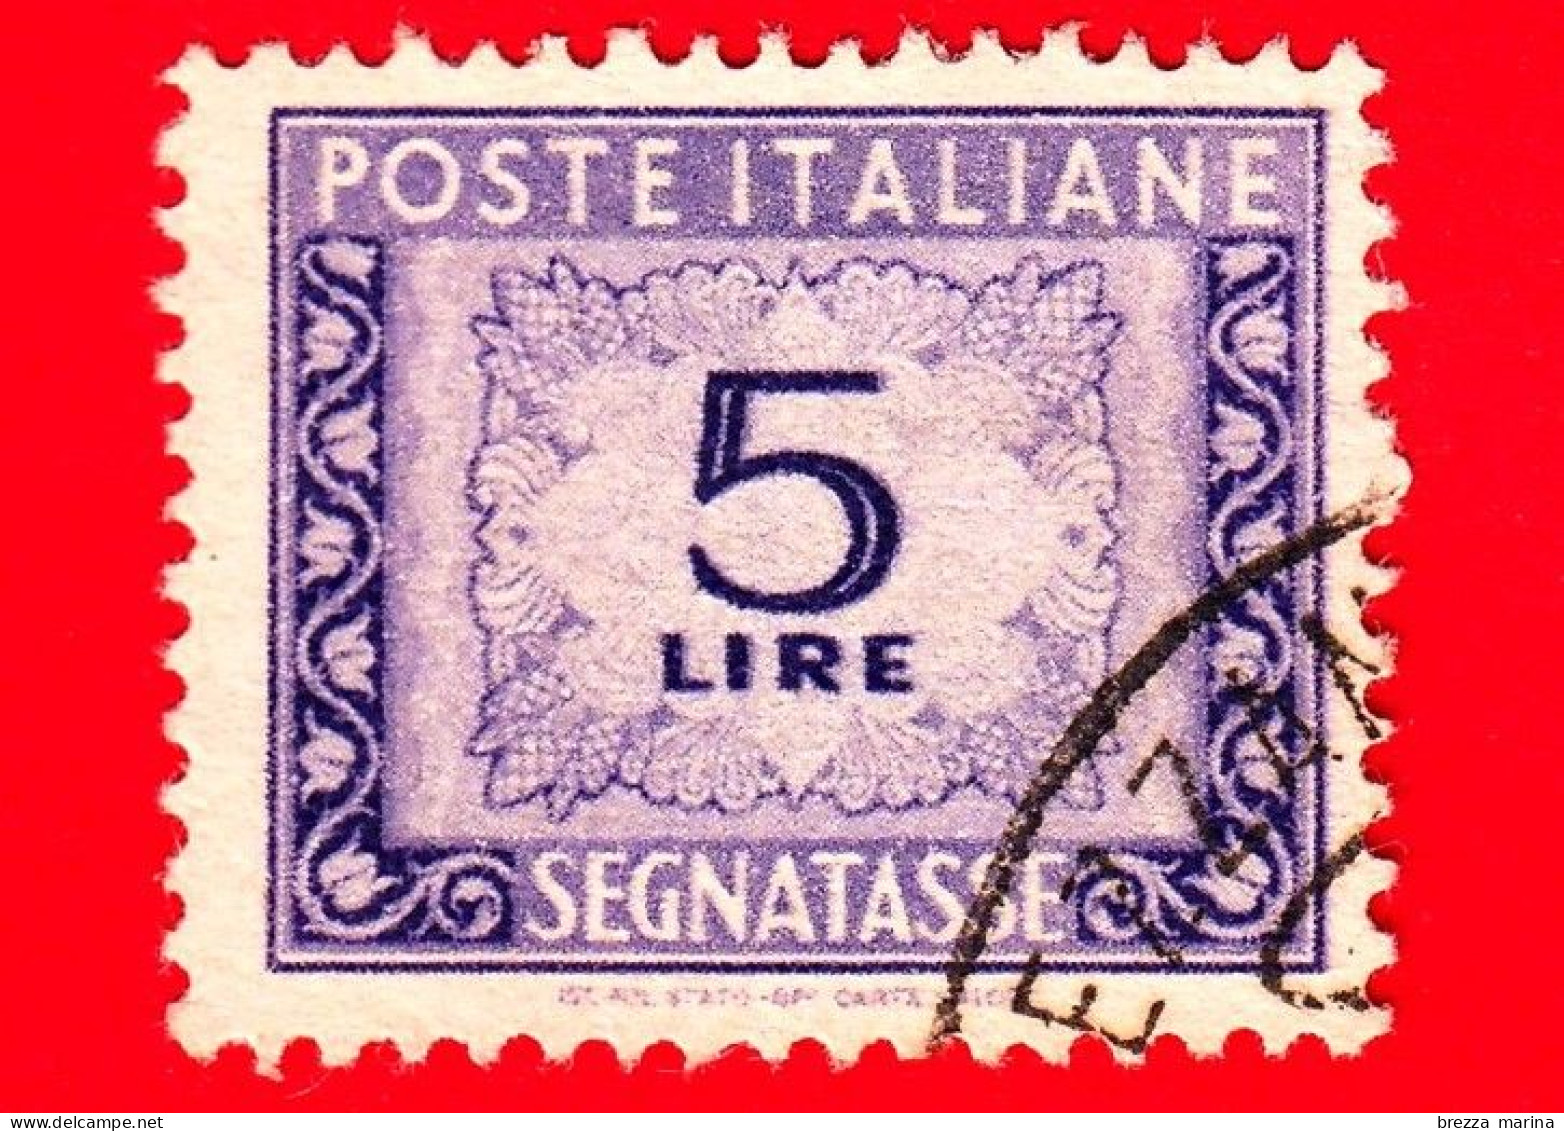 ITALIA - Usato - 1947 - Cifra E Decorazioni, Filigrana Ruota - Segnatasse - 5 L. • Cifra E Decorazioni - Strafport